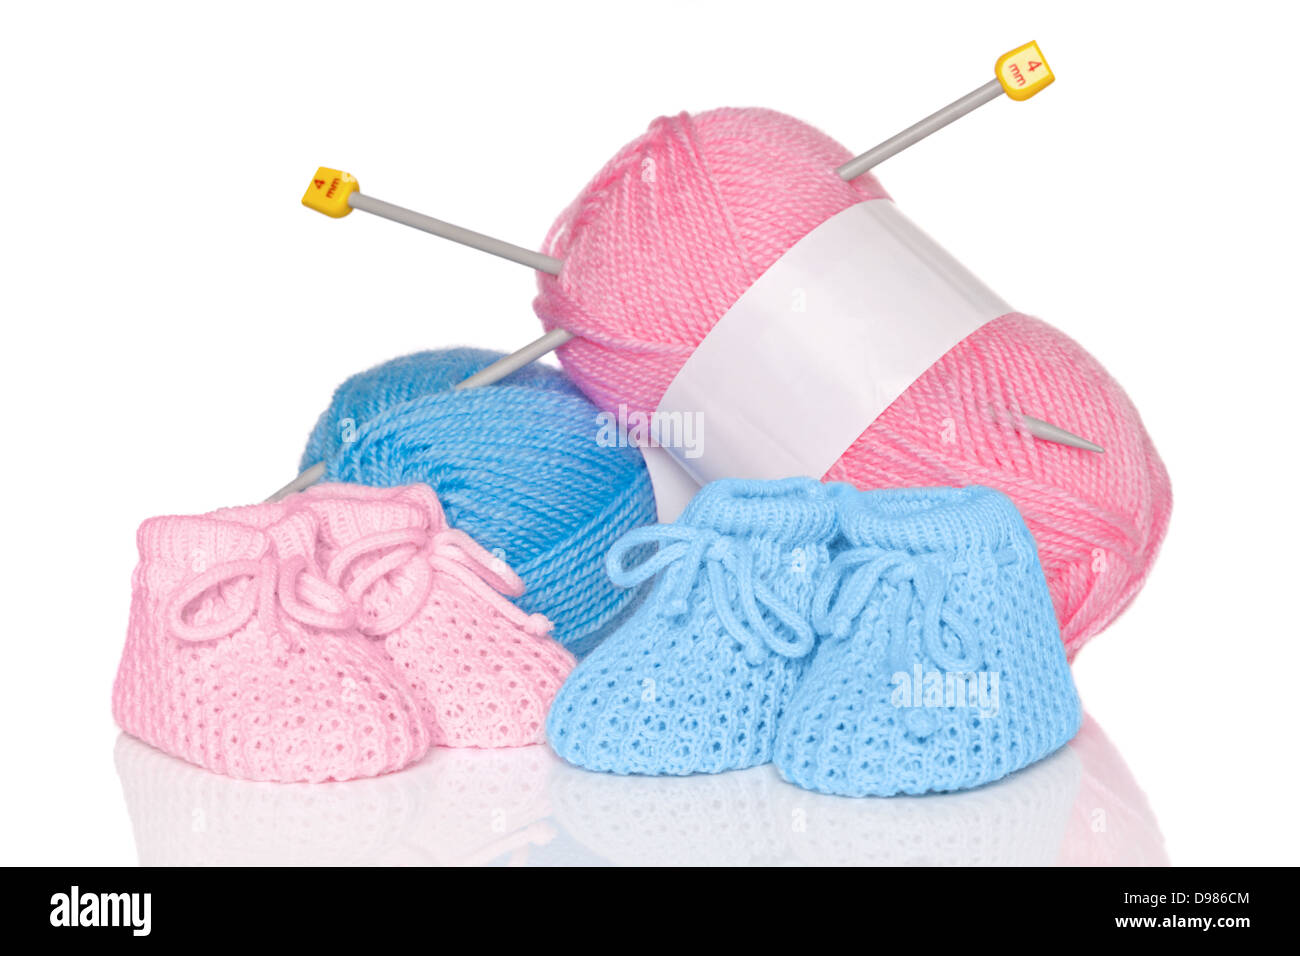 Chaussons pour bébé tricotés avec la laine rose et bleu et des aiguilles à tricoter, isolé sur un fond blanc. Banque D'Images